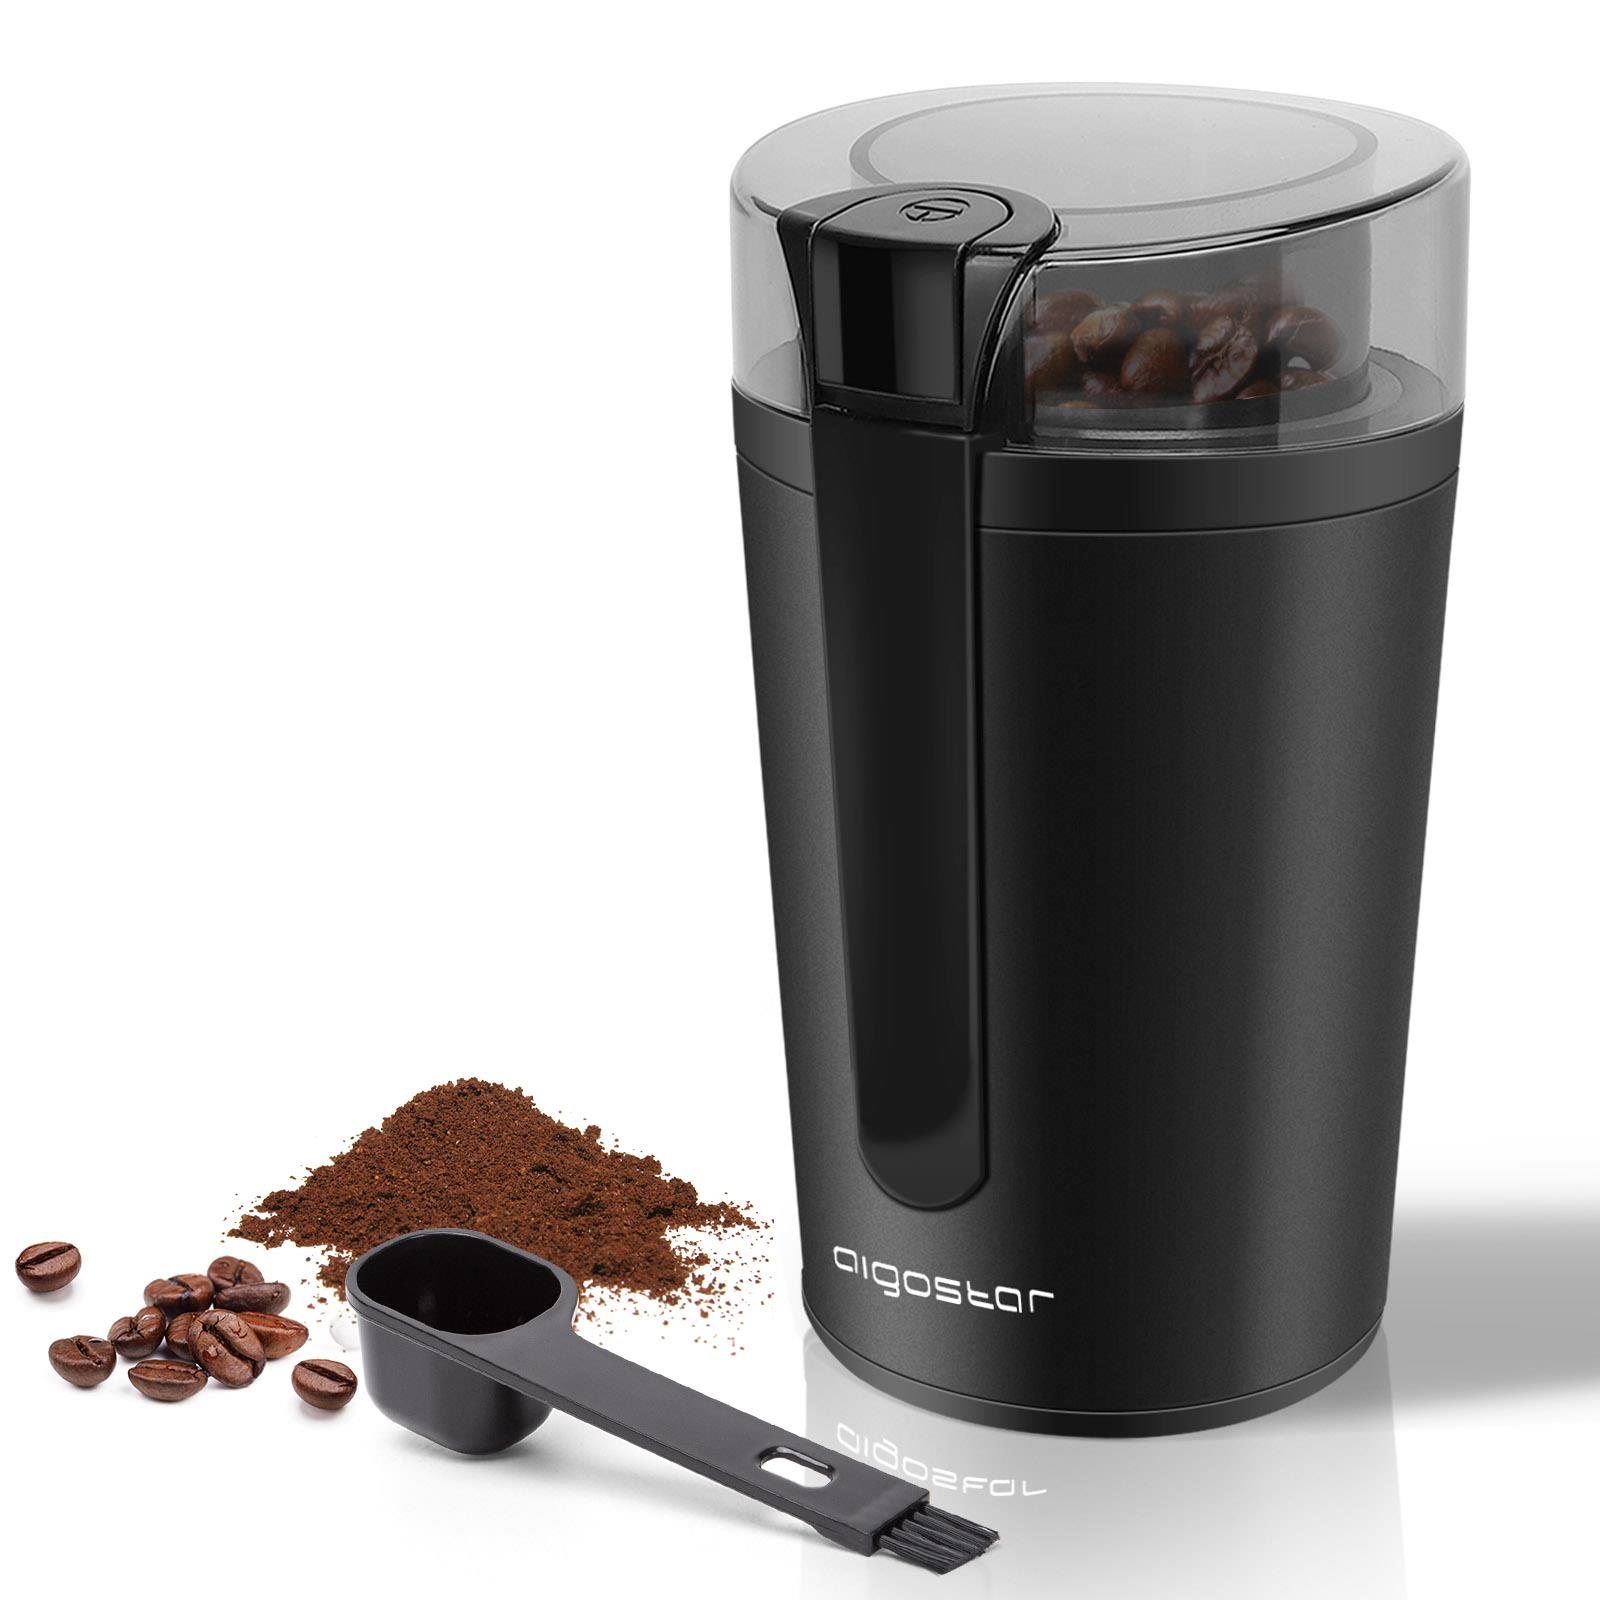 FonQ Aigostar Natural 30RRJ - Elektronische Koffiemolen - 200W - Zwart aanbieding